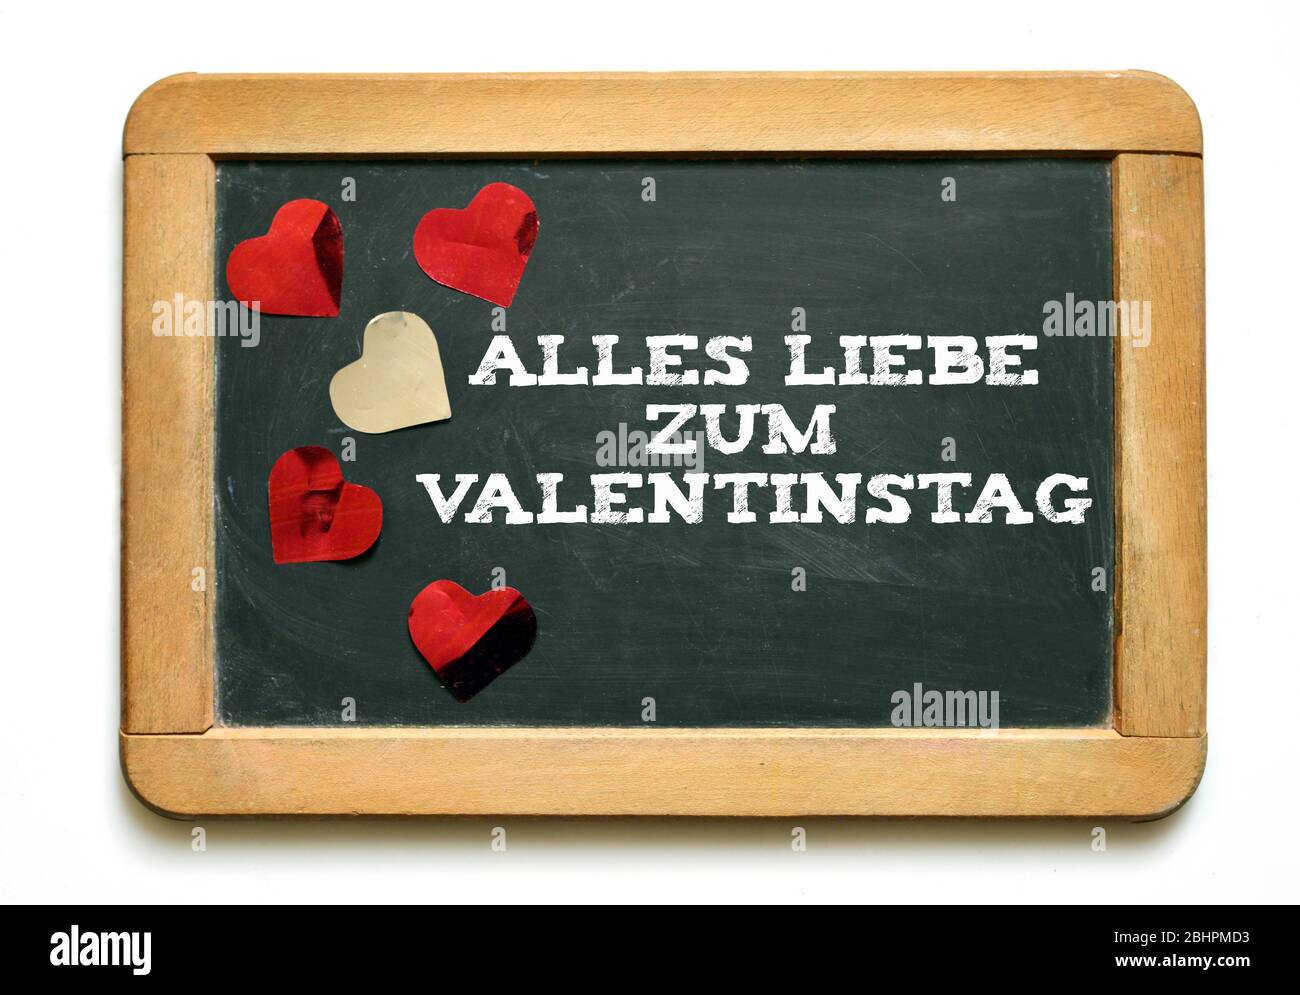 Tableau de surveillance avec texte allemand, Alles Liebe zum Valentitintag Translate, tout l'amour pour la Saint Valentin Banque D'Images